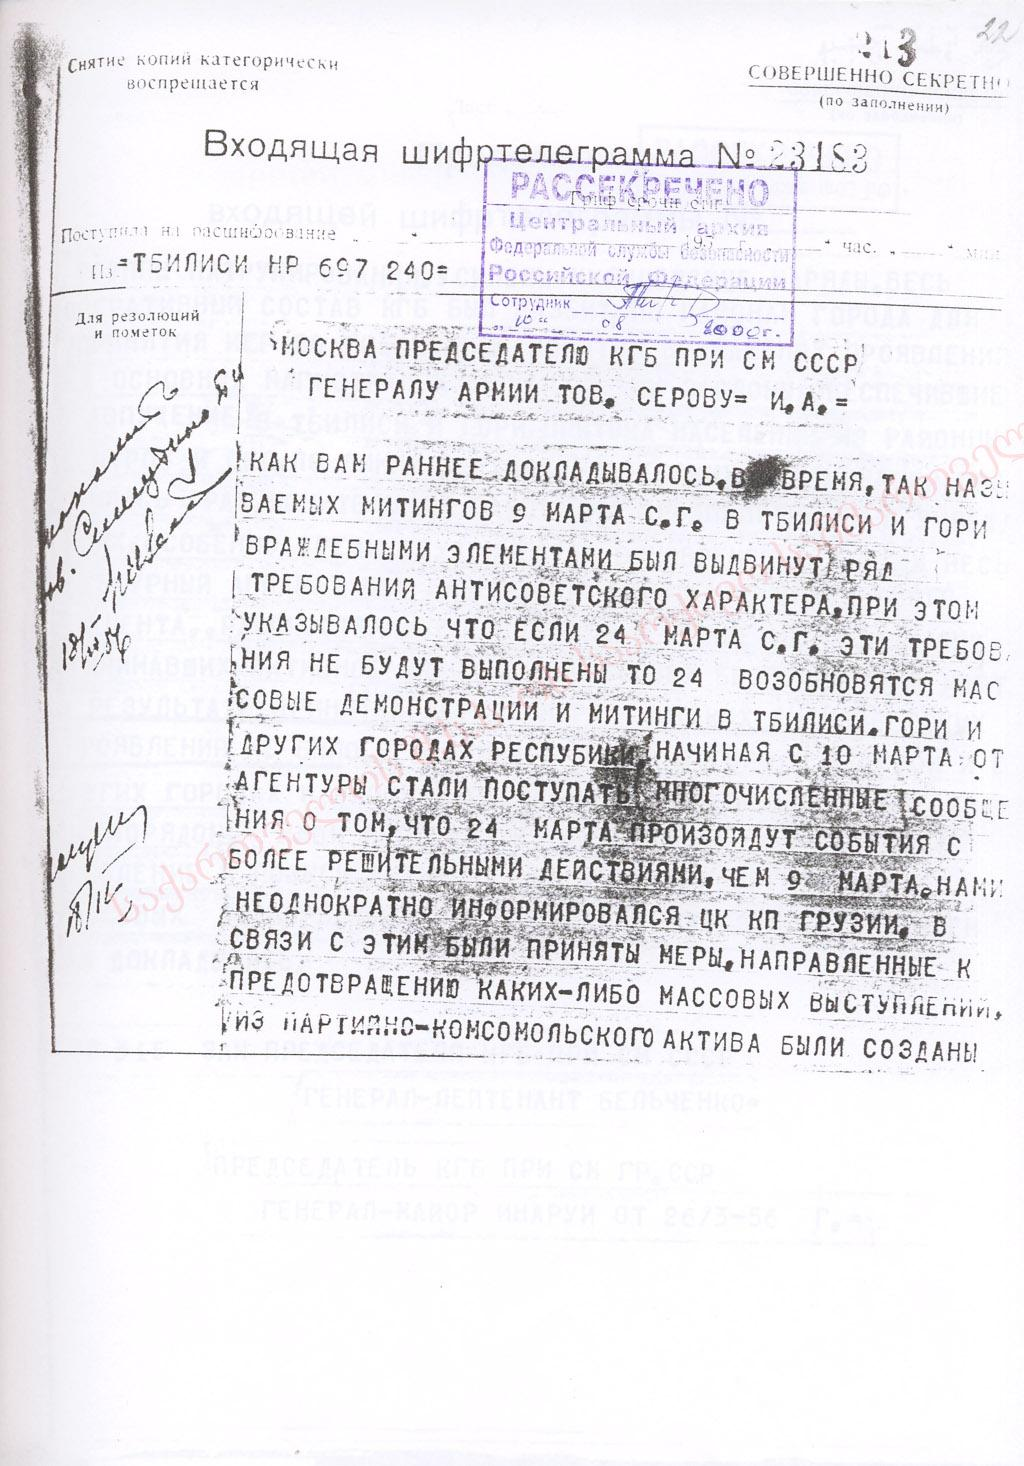 Входящие шифрованные телеграммы, рассекреченные ФСБ Российской Федерации, о событиях 5-9 марта 1956 г. Шифртелеграмма № 23183 от 26 марта 1956 г. 